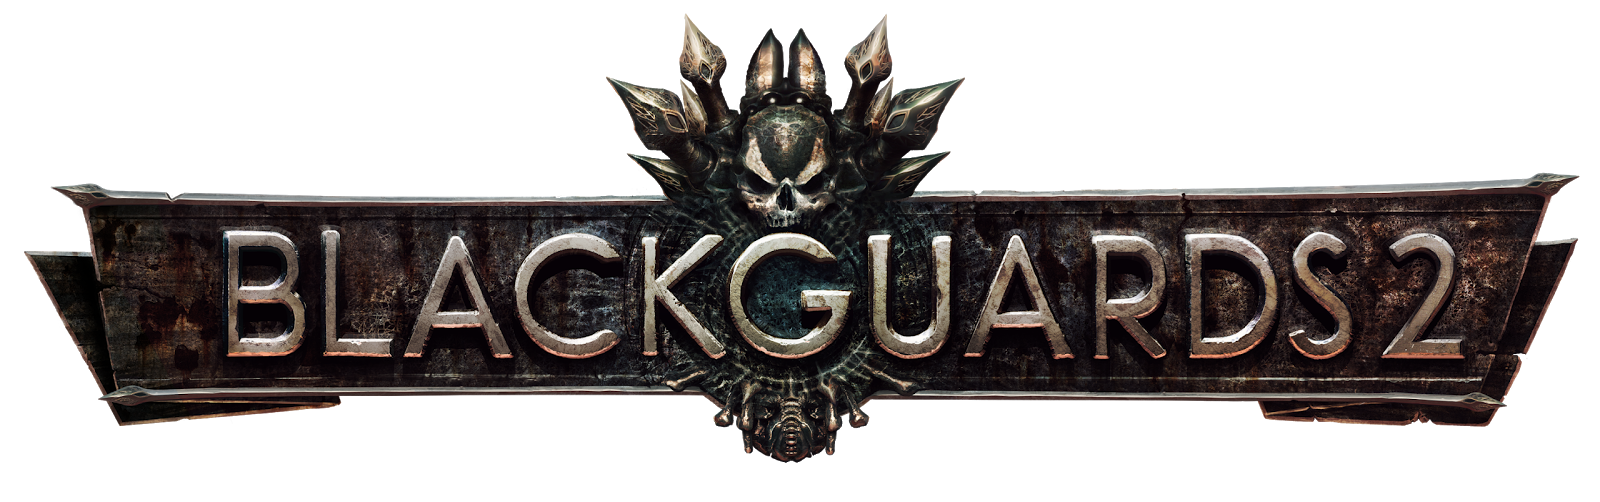 blackguards 2 lore